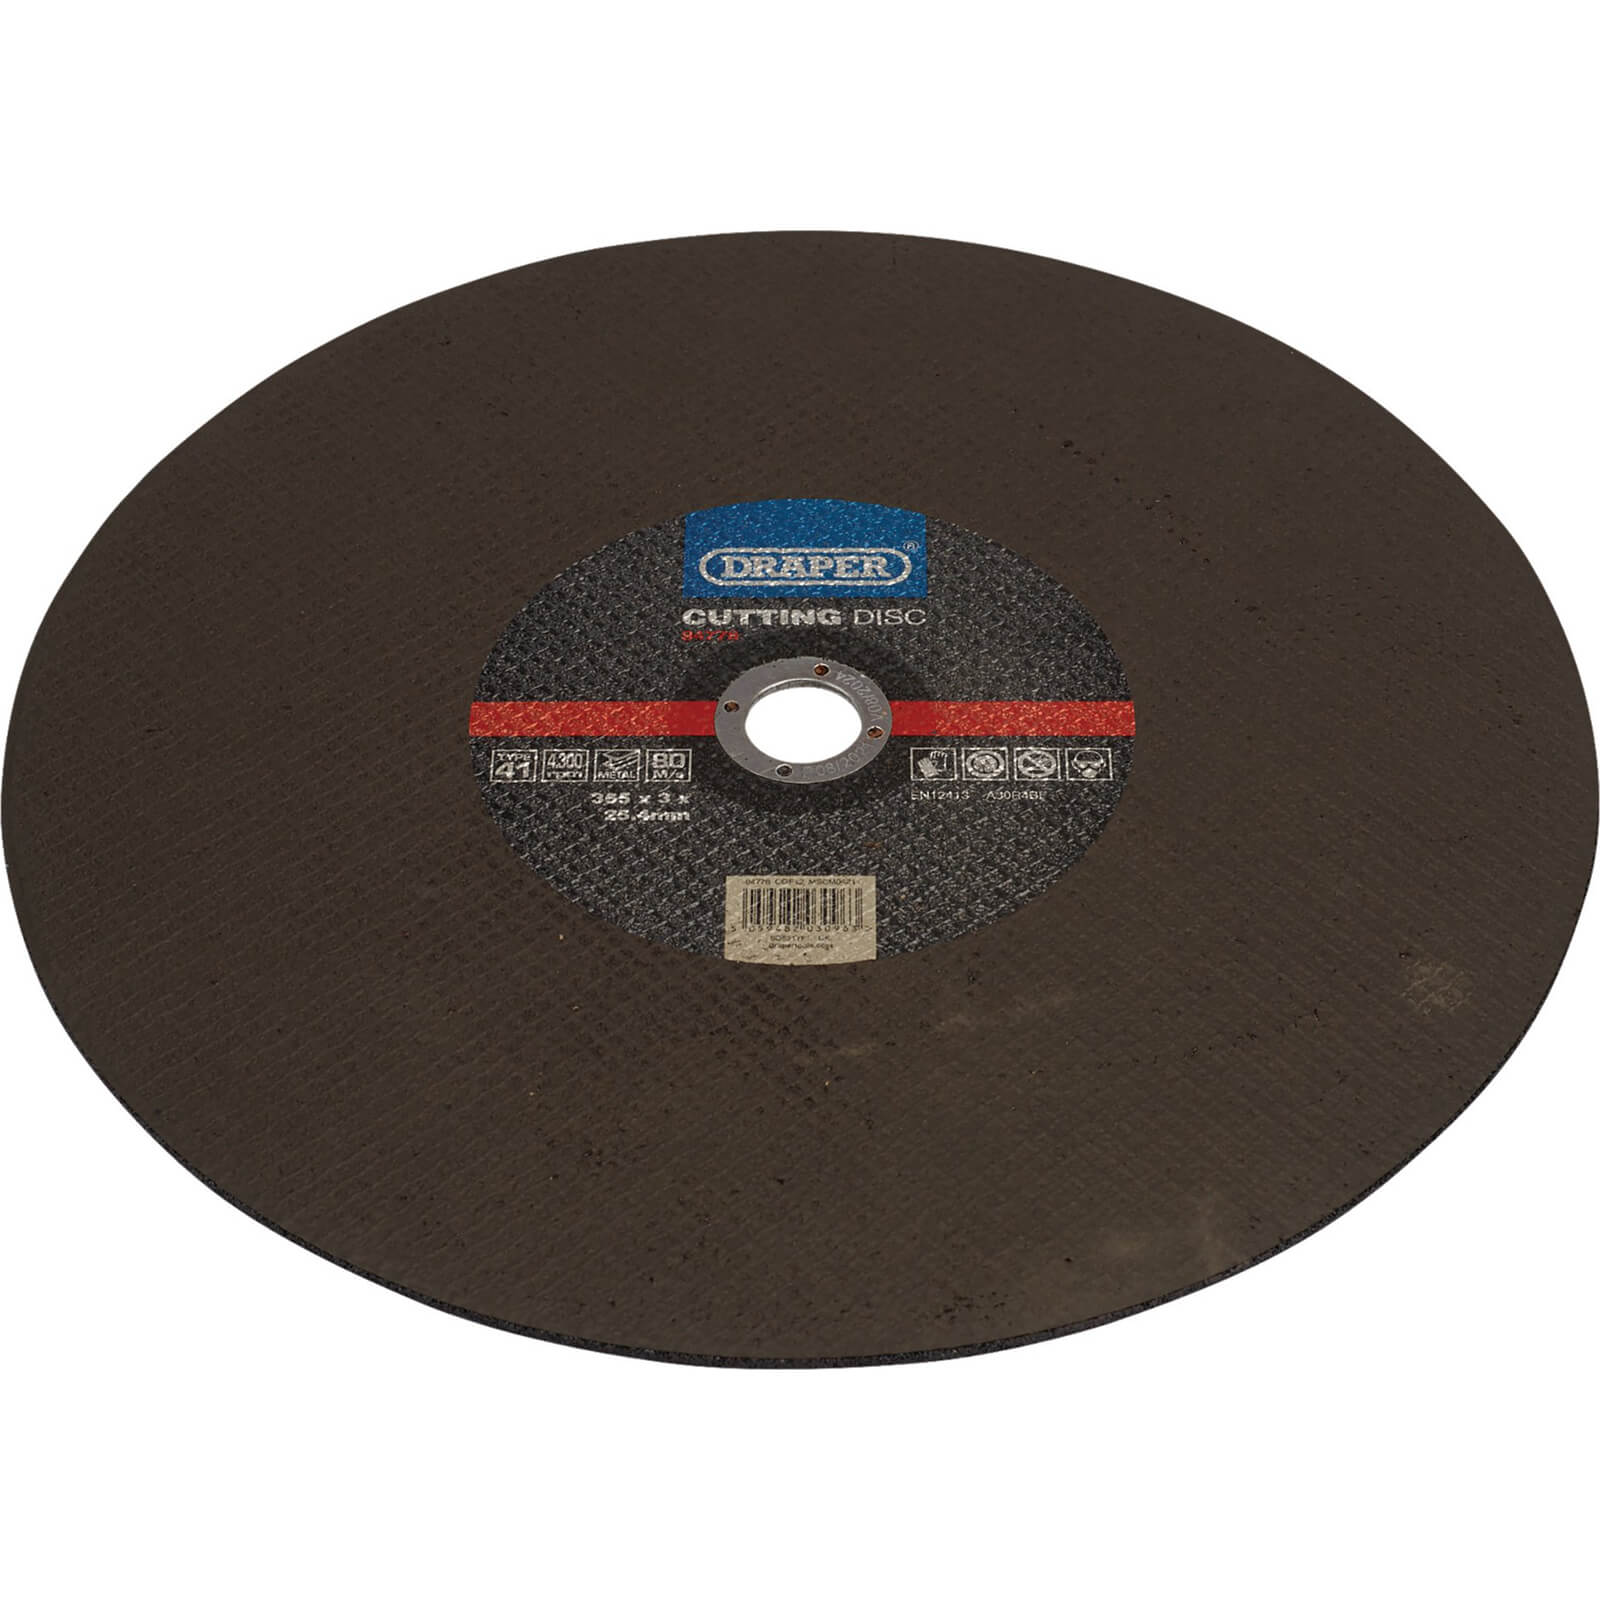 Draper Metal Cutting Disc 355mm 3mm 25.4mm